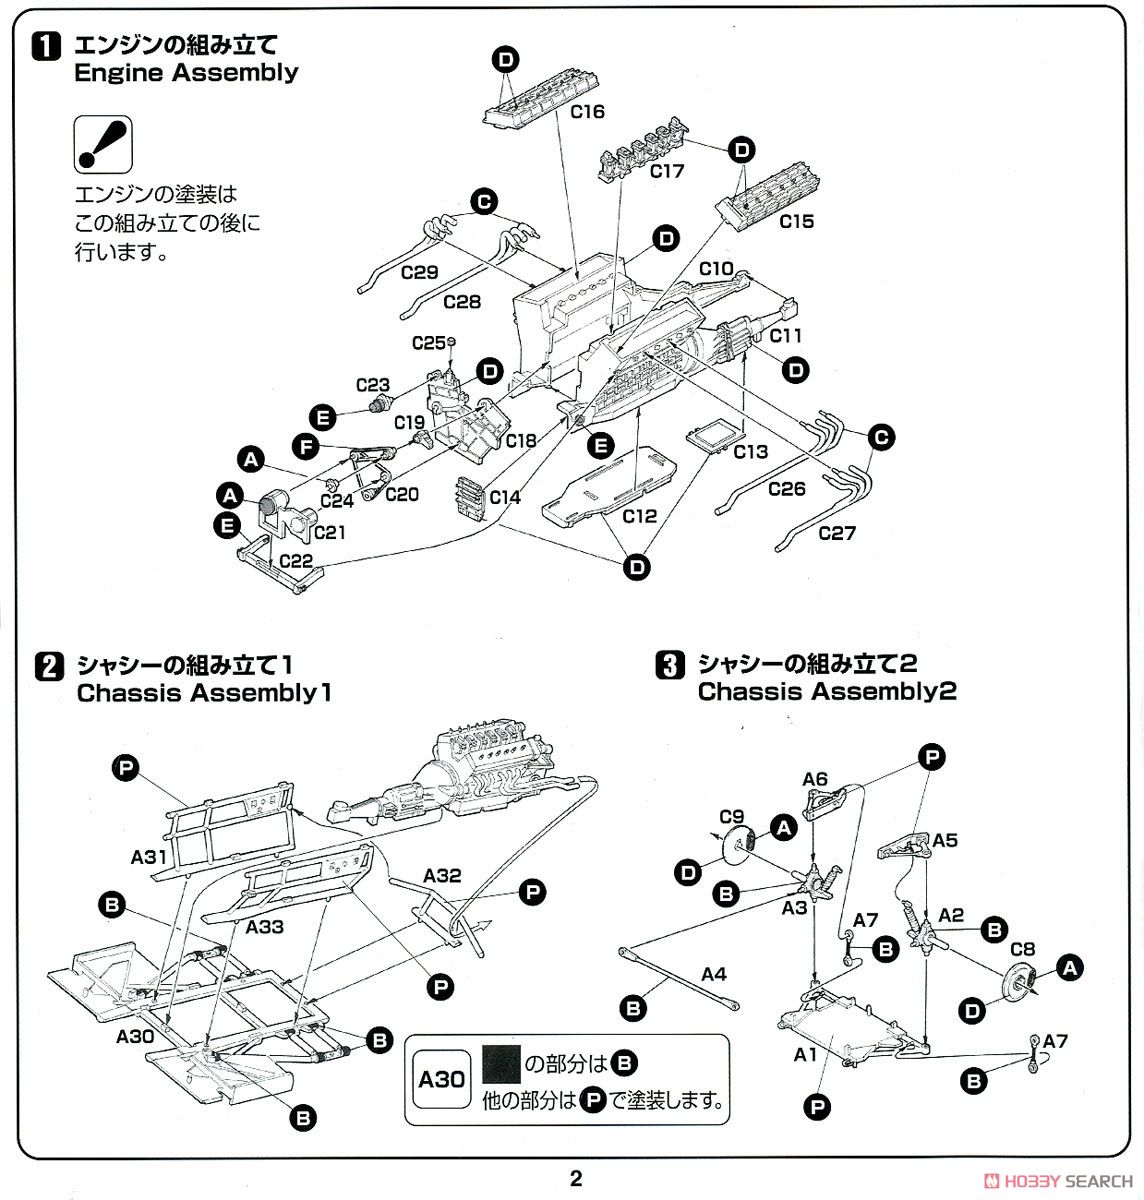 ランボルギーニ カウンタック LP5000 クアトロバルボーレ 日本語版特別仕様 (プラモデル) 設計図1